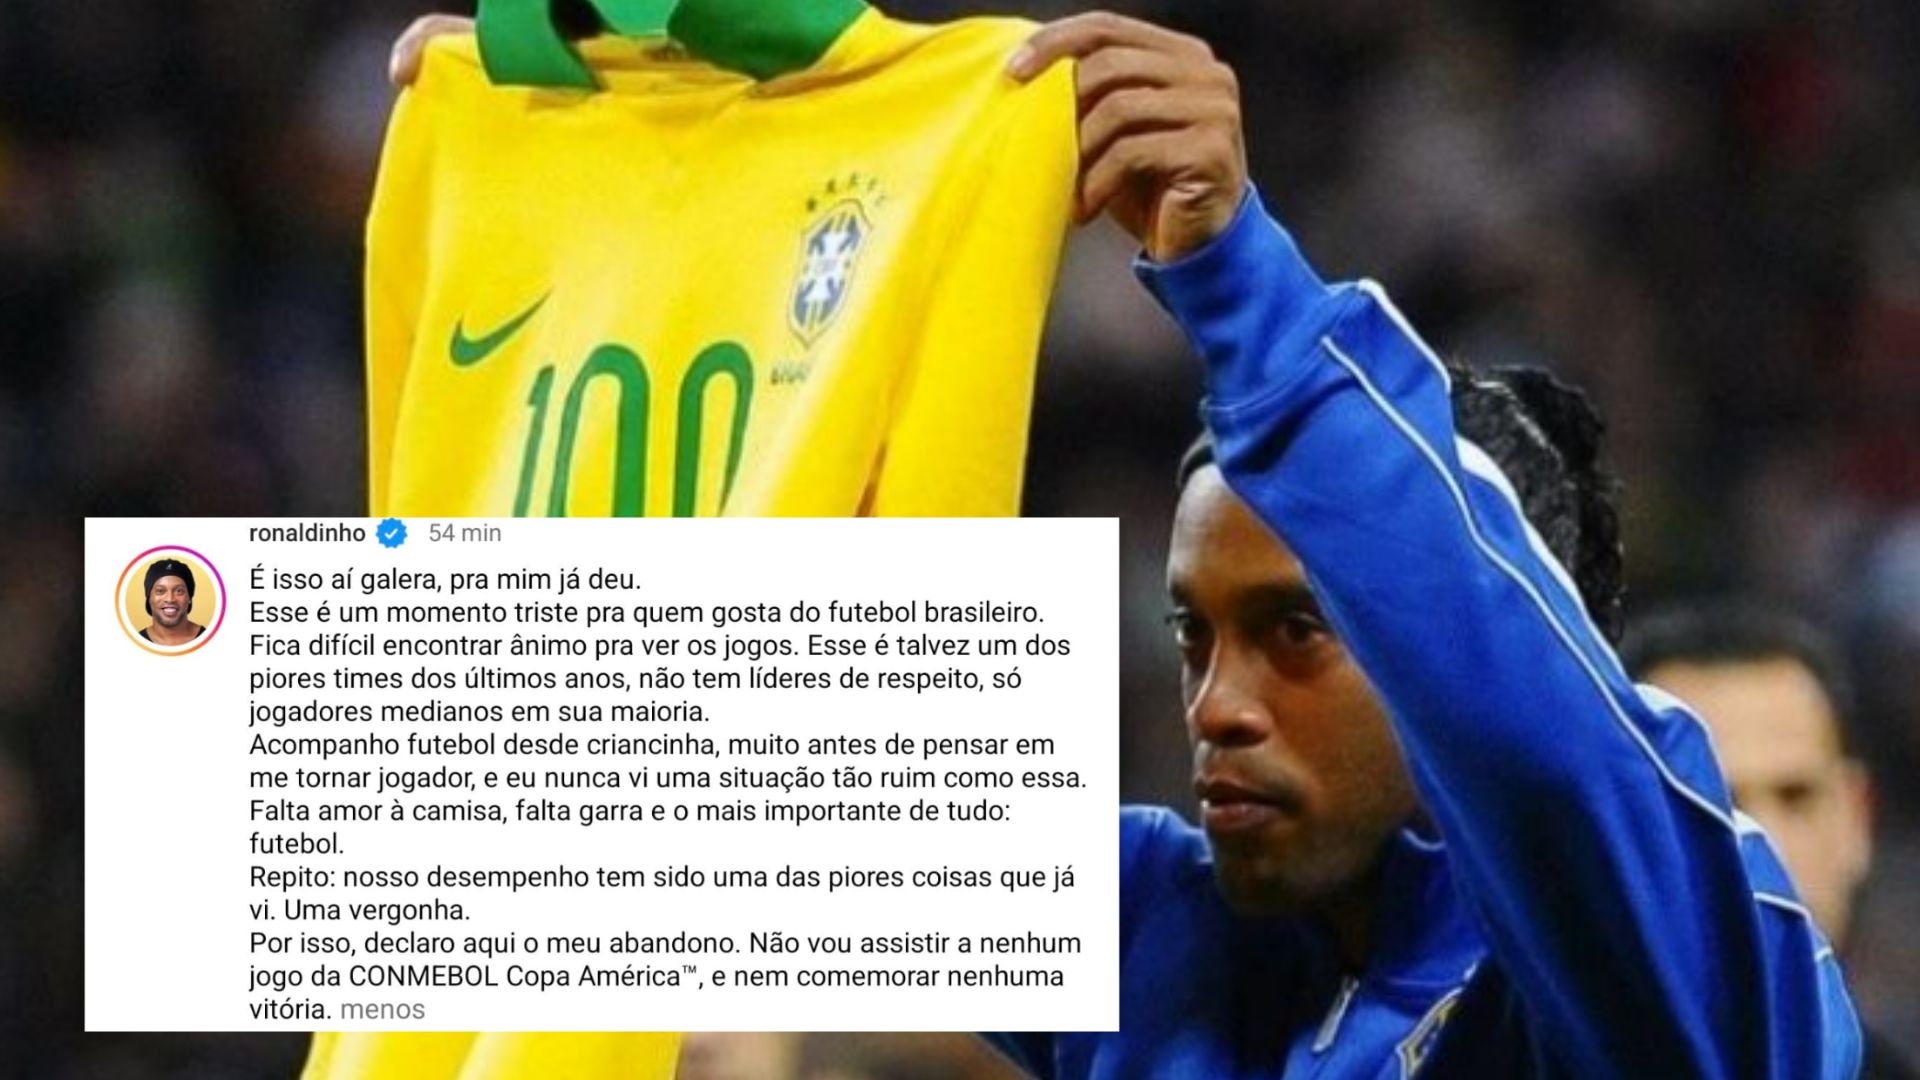 "Um dos piores times dos últimos anos", diz RONALDINHO sobre a seleção brasileira. Foto: Reprodução / Instagram @ronaldinho